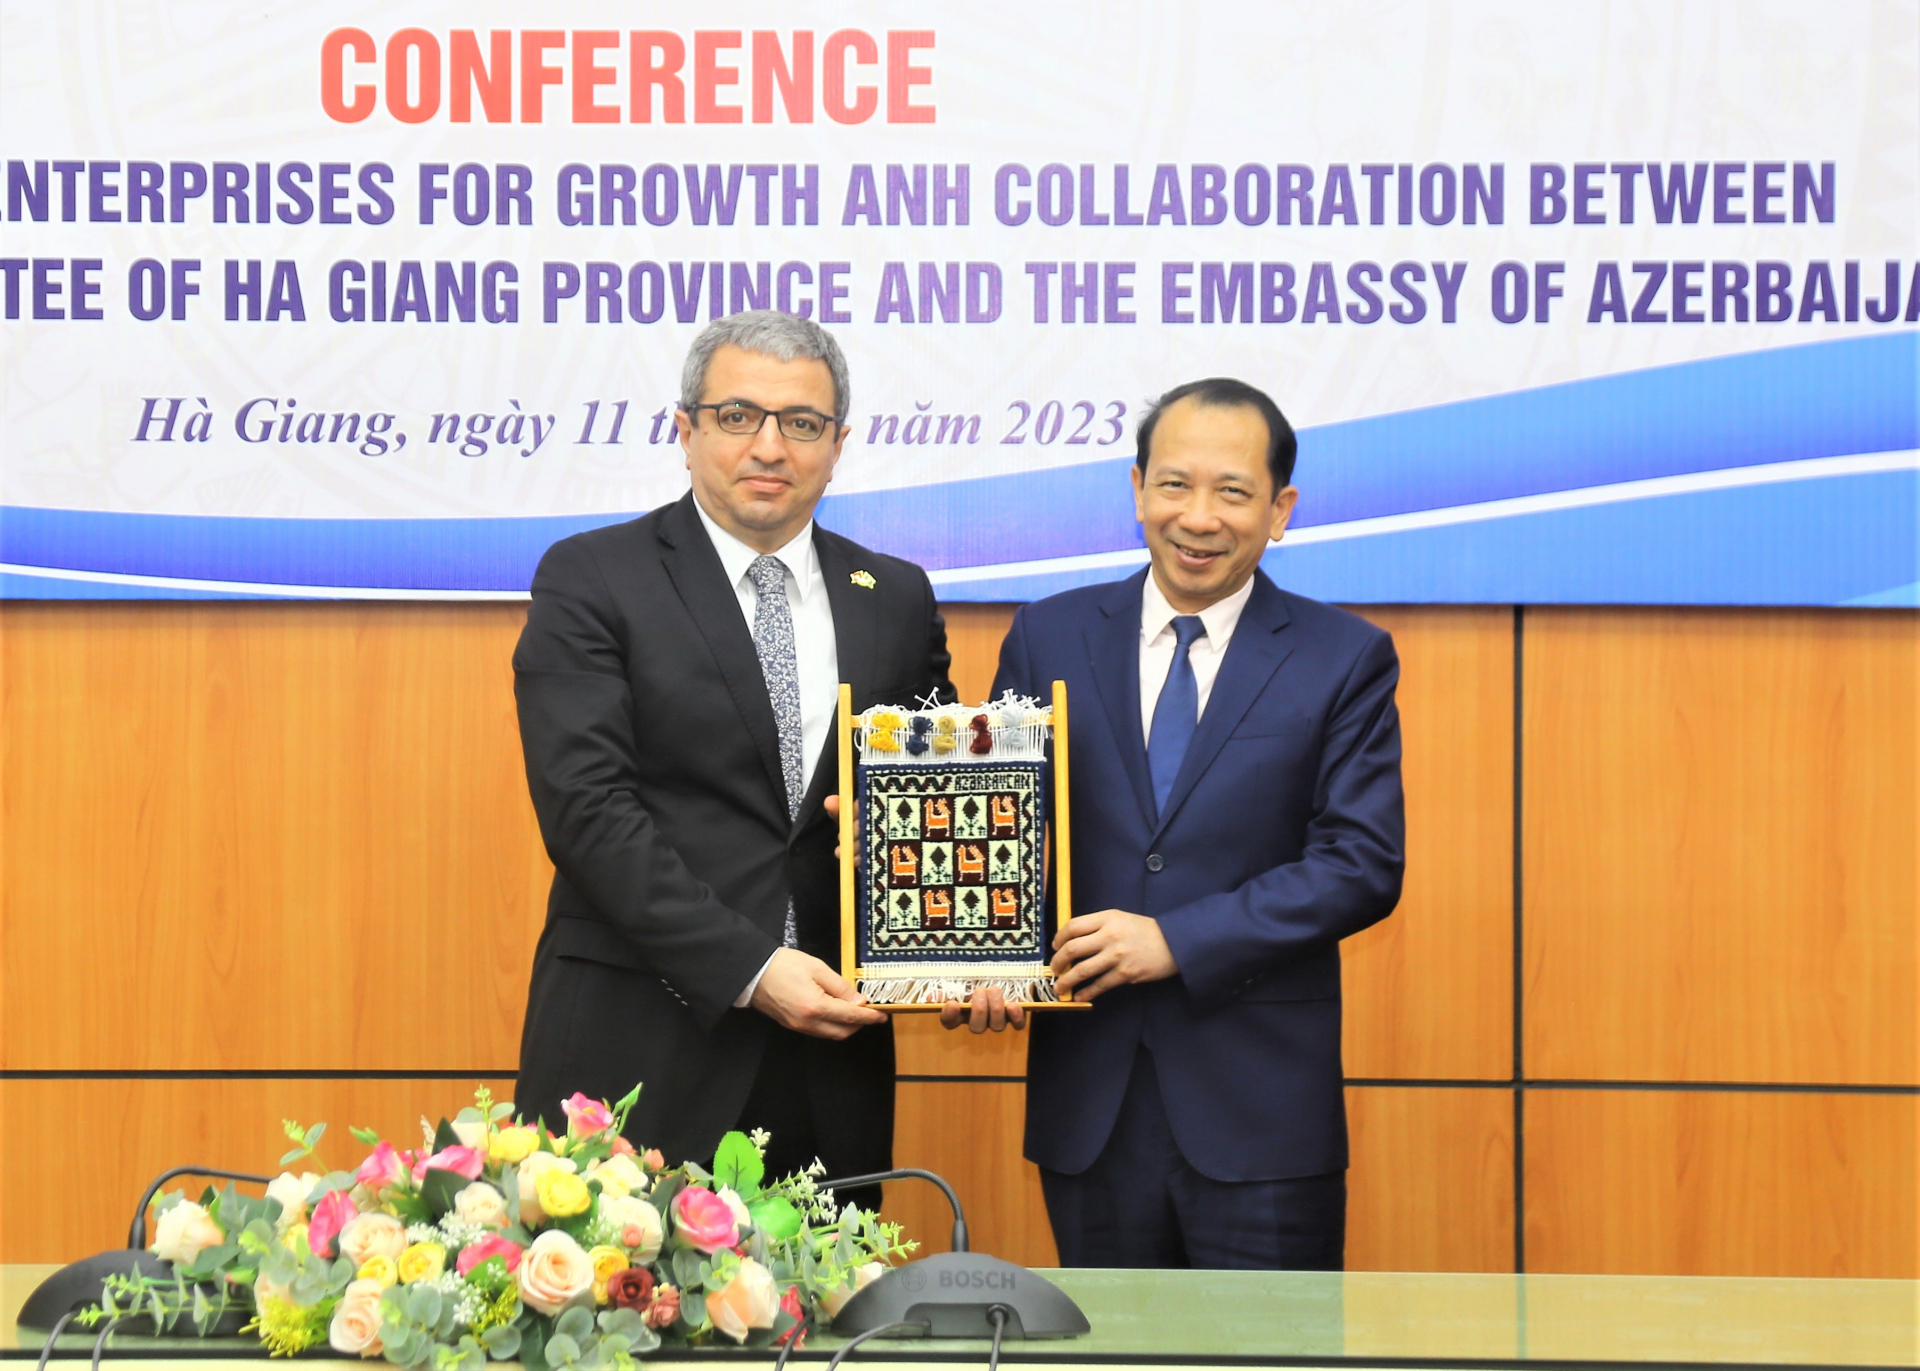 Ngài Shovgi Mehdizada - Đại sứ Đặc mệnh toàn quyền, Đại sứ quán nước Cộng hòa Azerbaijan tại Việt Nam tặng quà lưu niệm cho lãnh đạo UBND tỉnh.